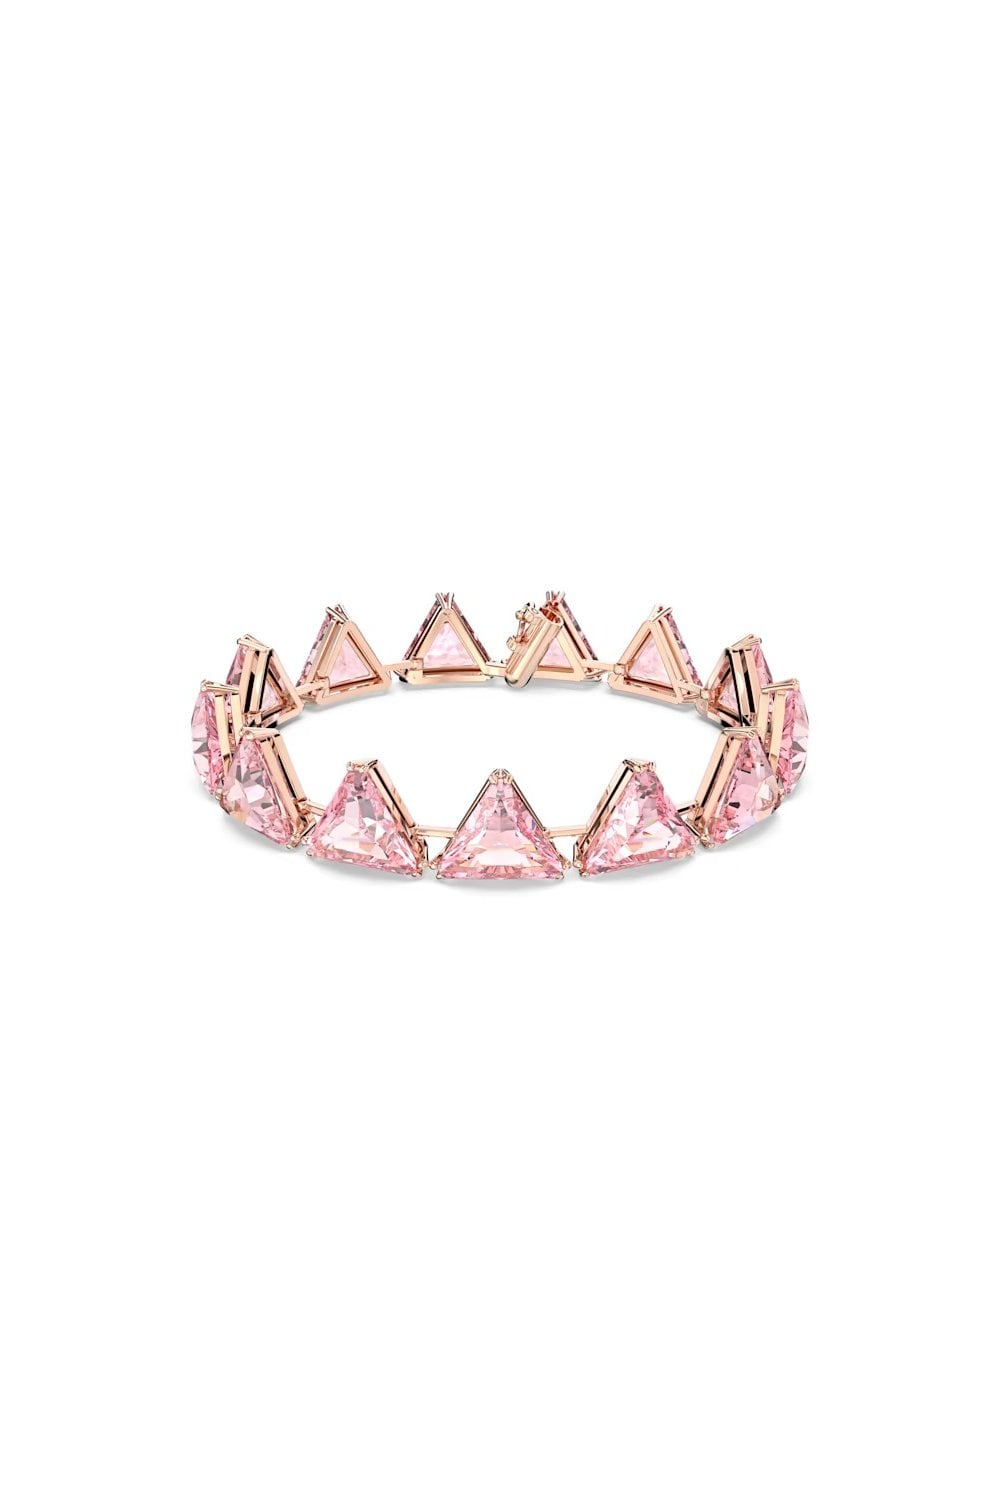 Swarovski Ortyx Pink Triangle Bracelet 5614934